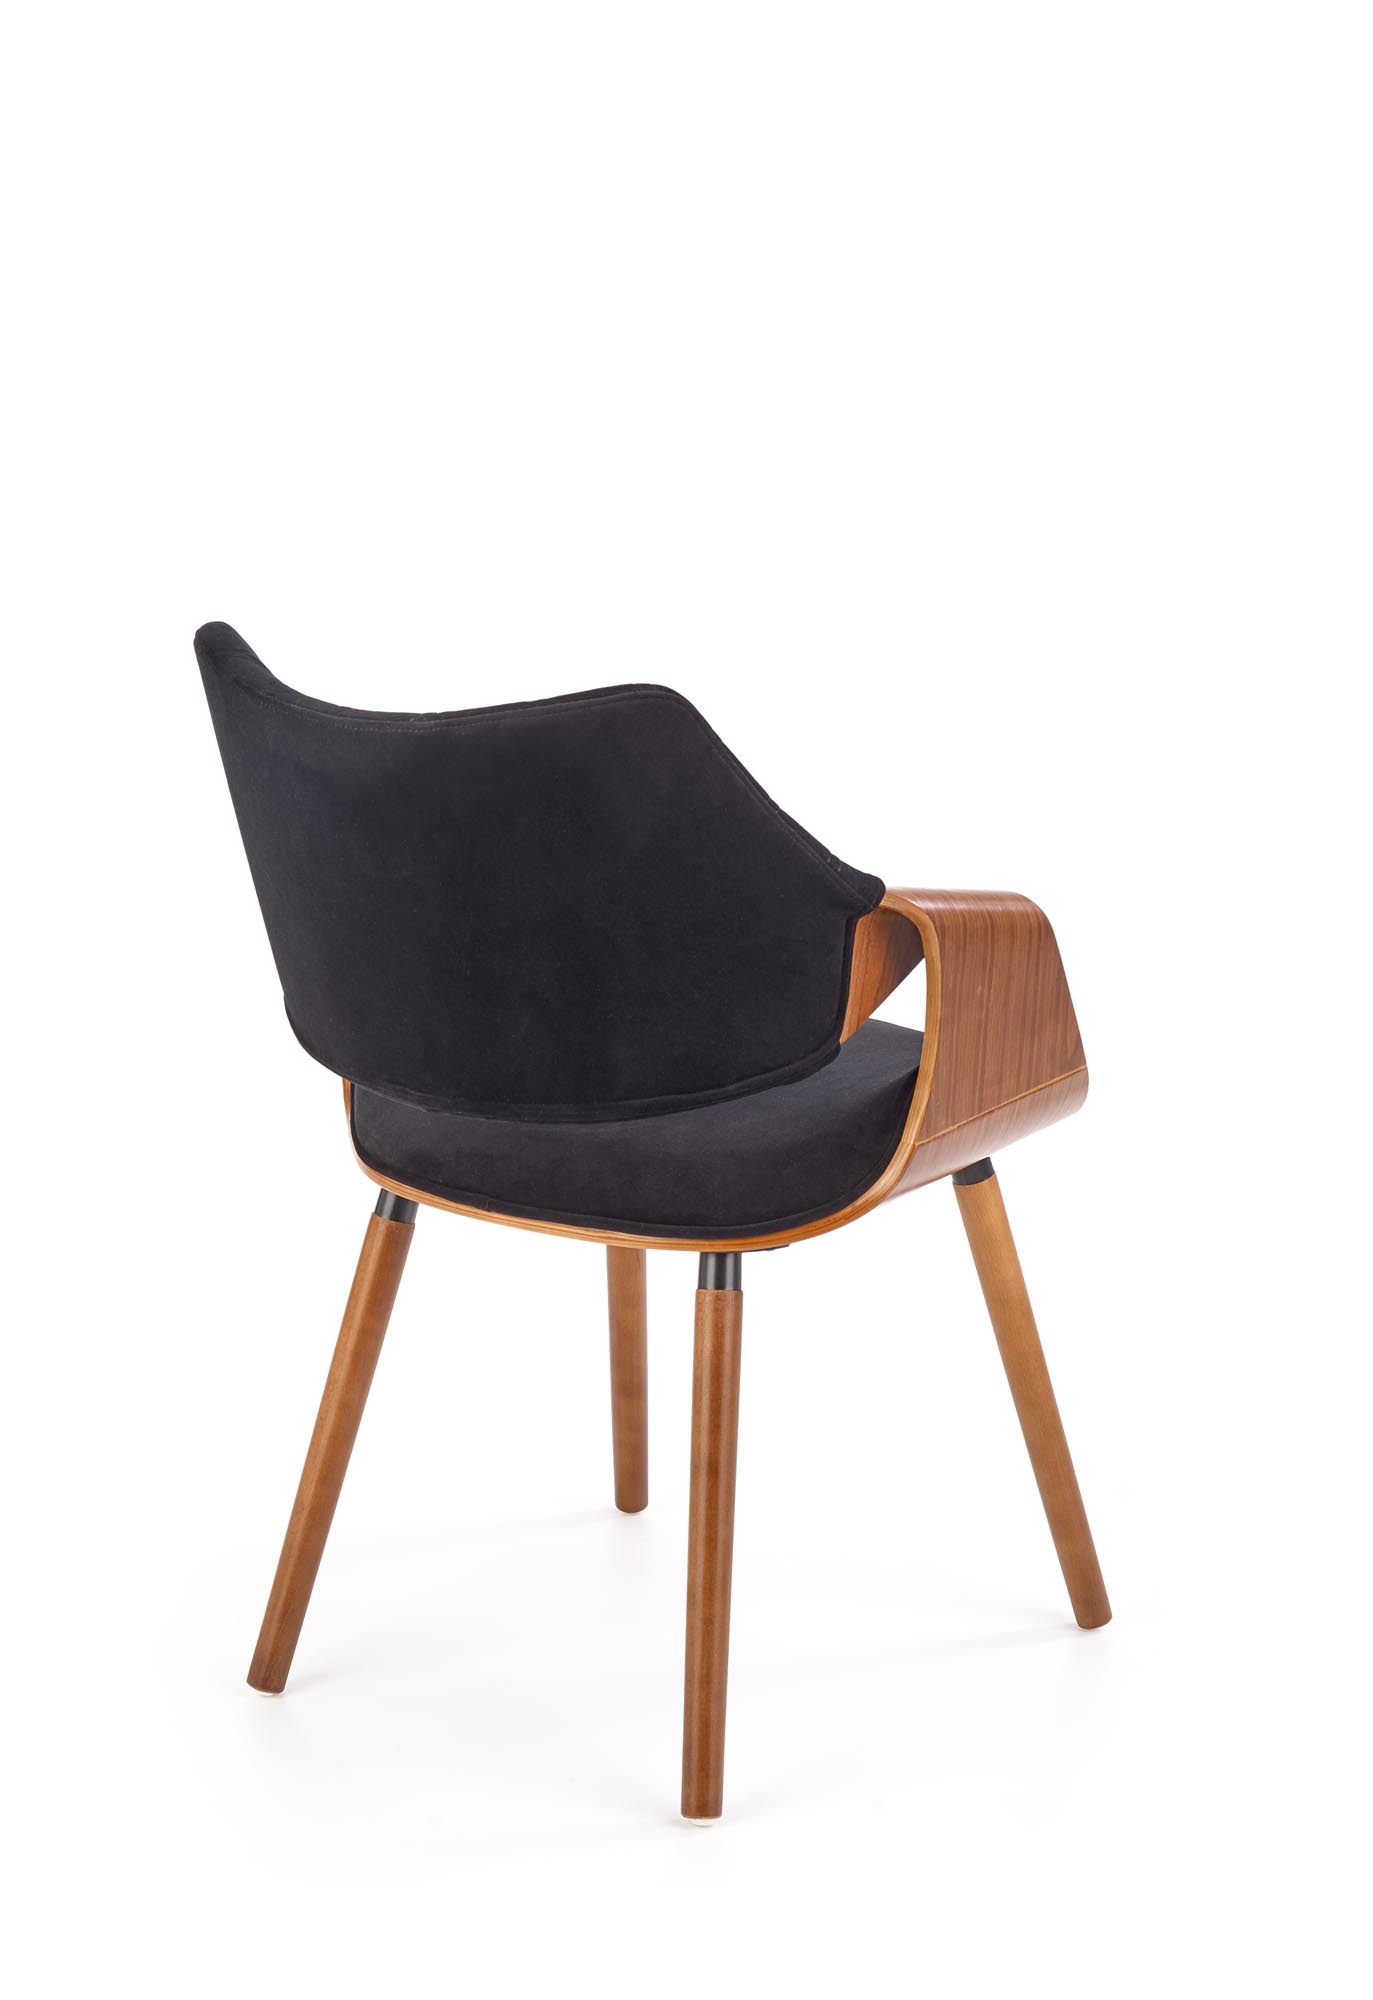 Krzesło tapicerowane K396 - orzechowy / czarny krzesło tapicerowane k396 - orzechowy / czarny